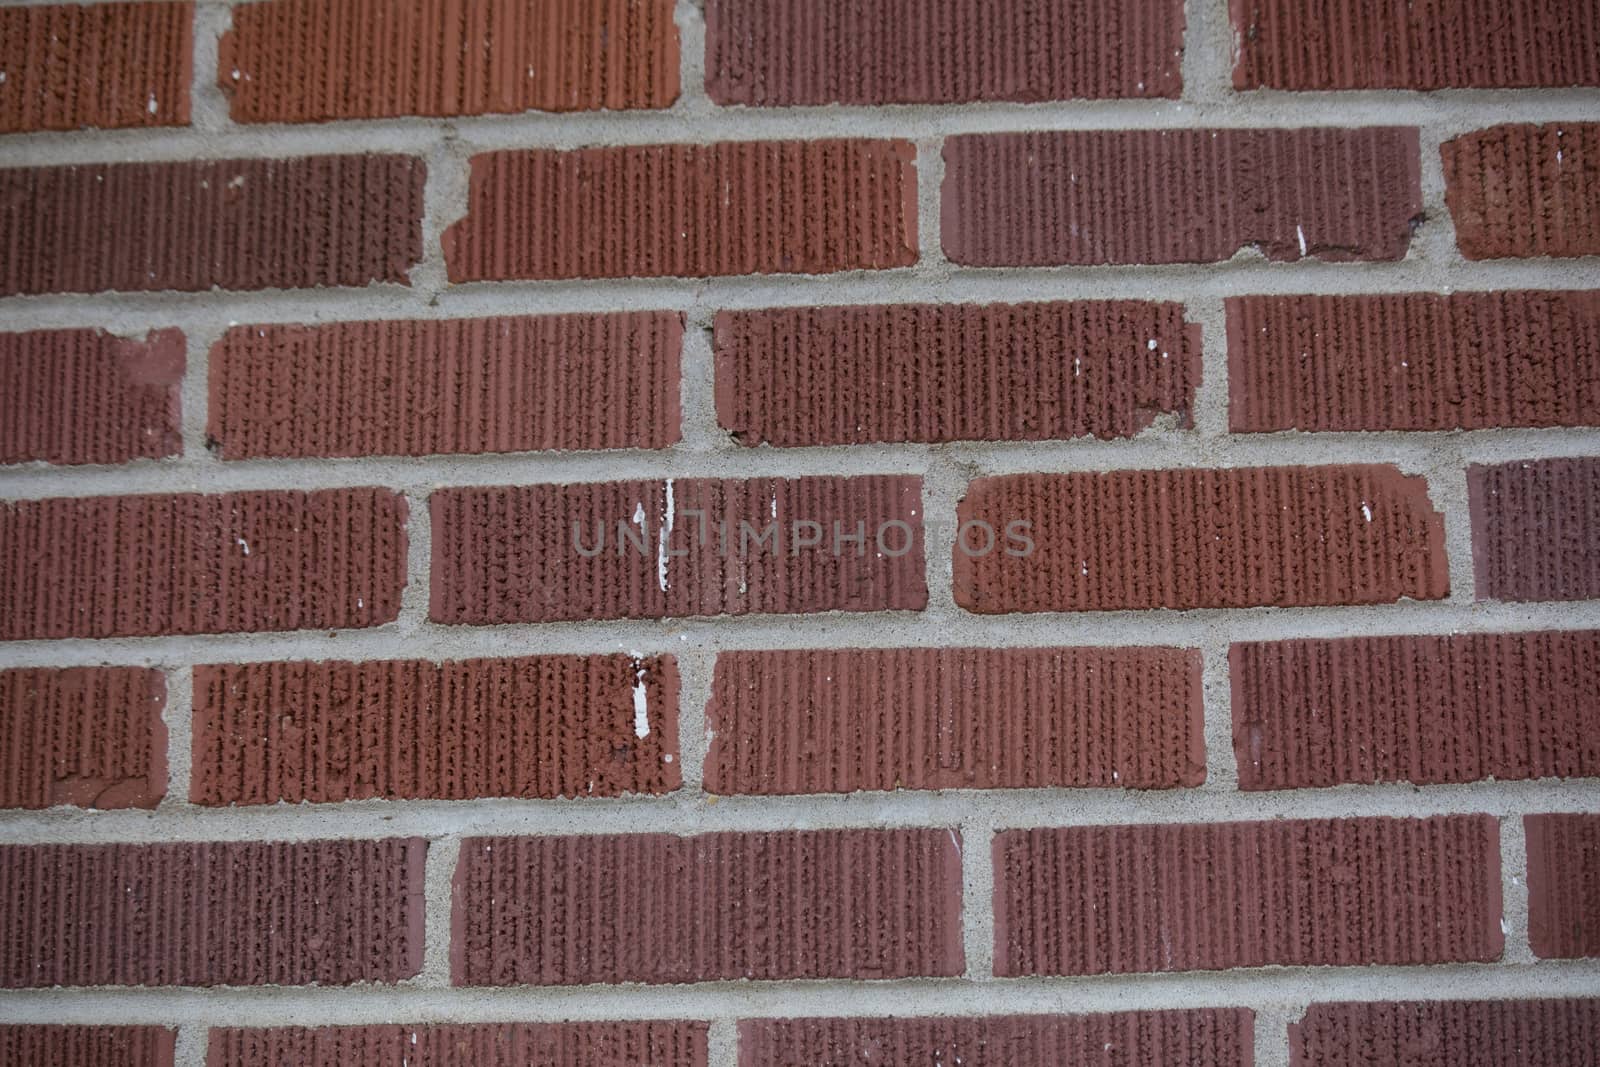 Close-up of dark red brick wall